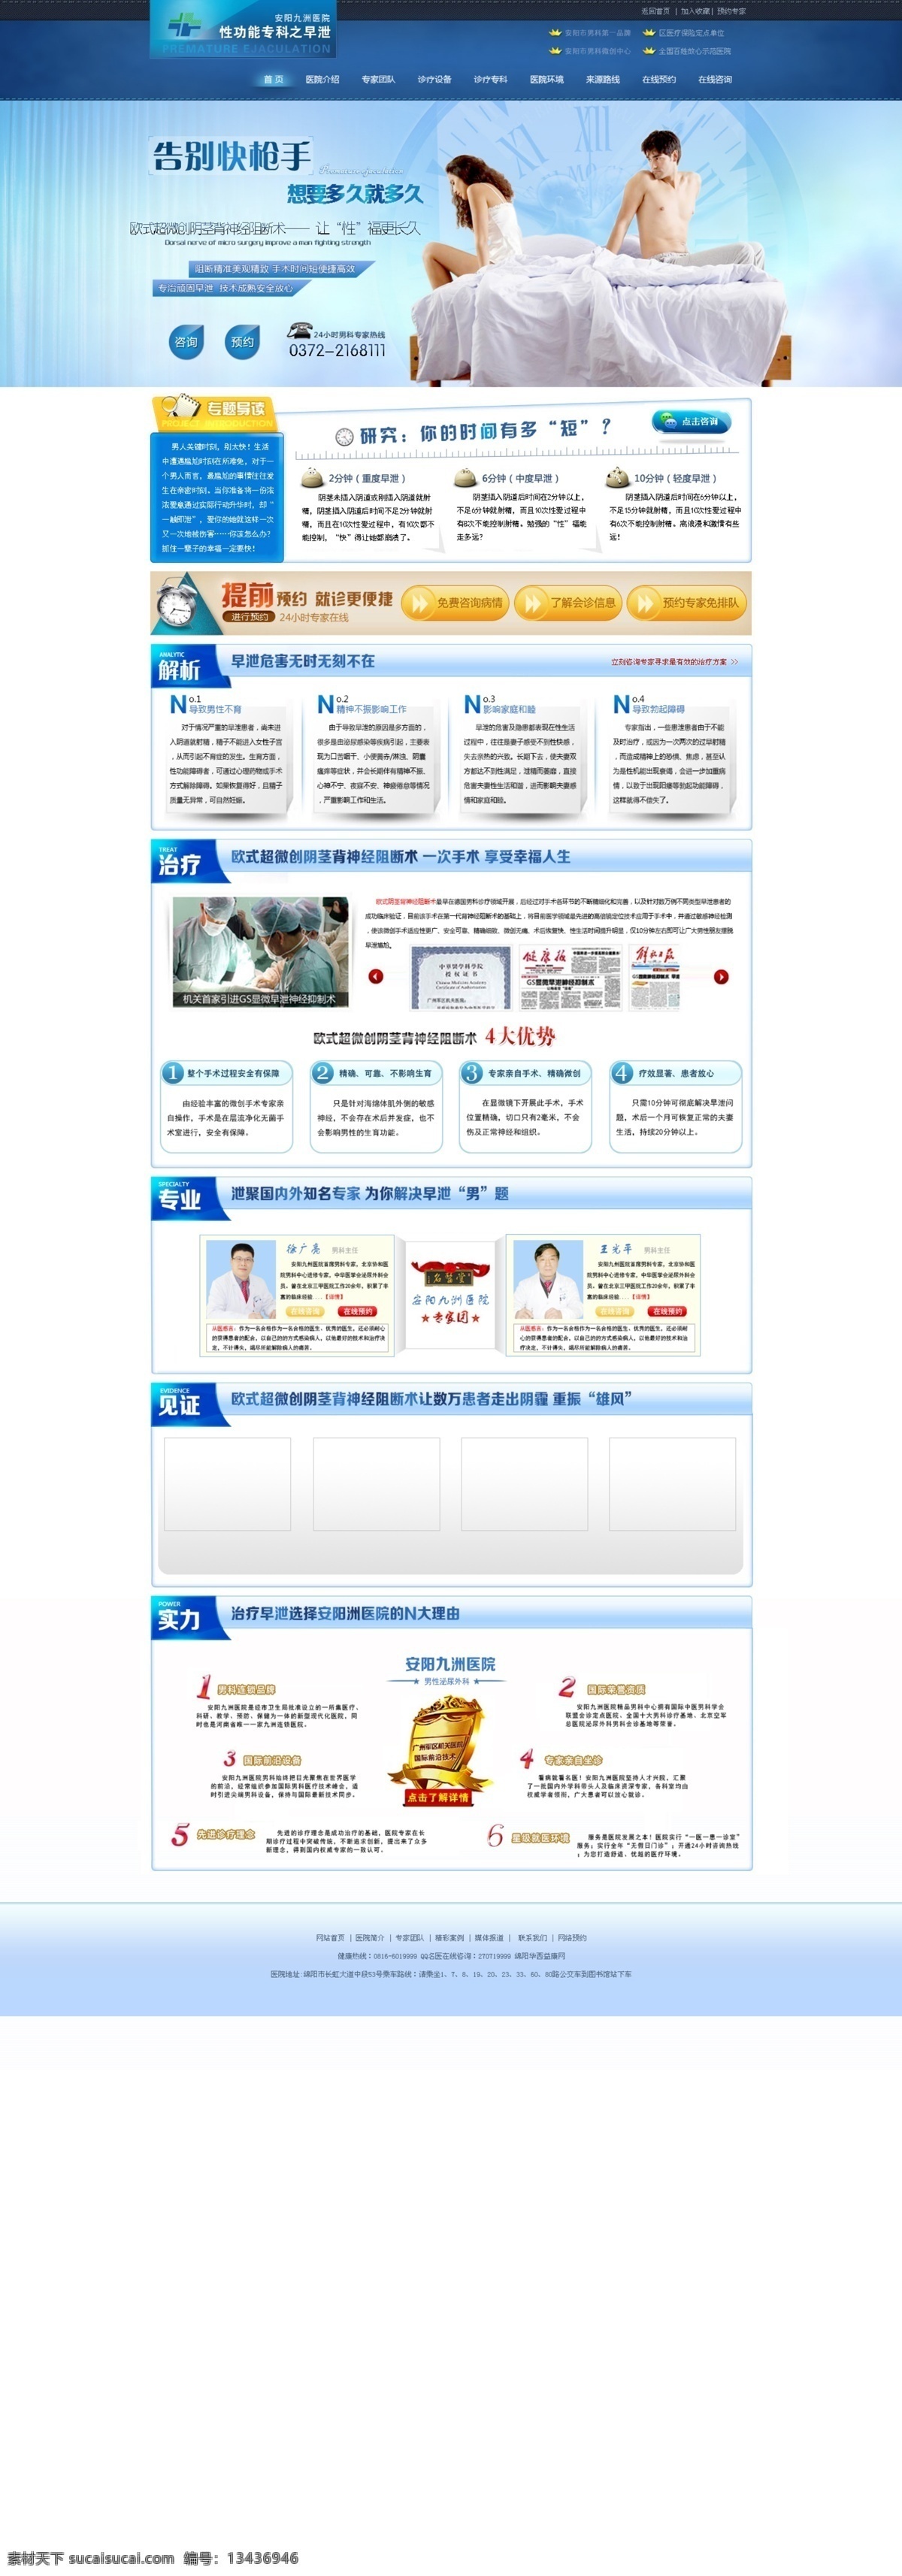 阳痿早泄 蓝色 阳痿 早泄 专题 医院 中文模板 网页模板 源文件